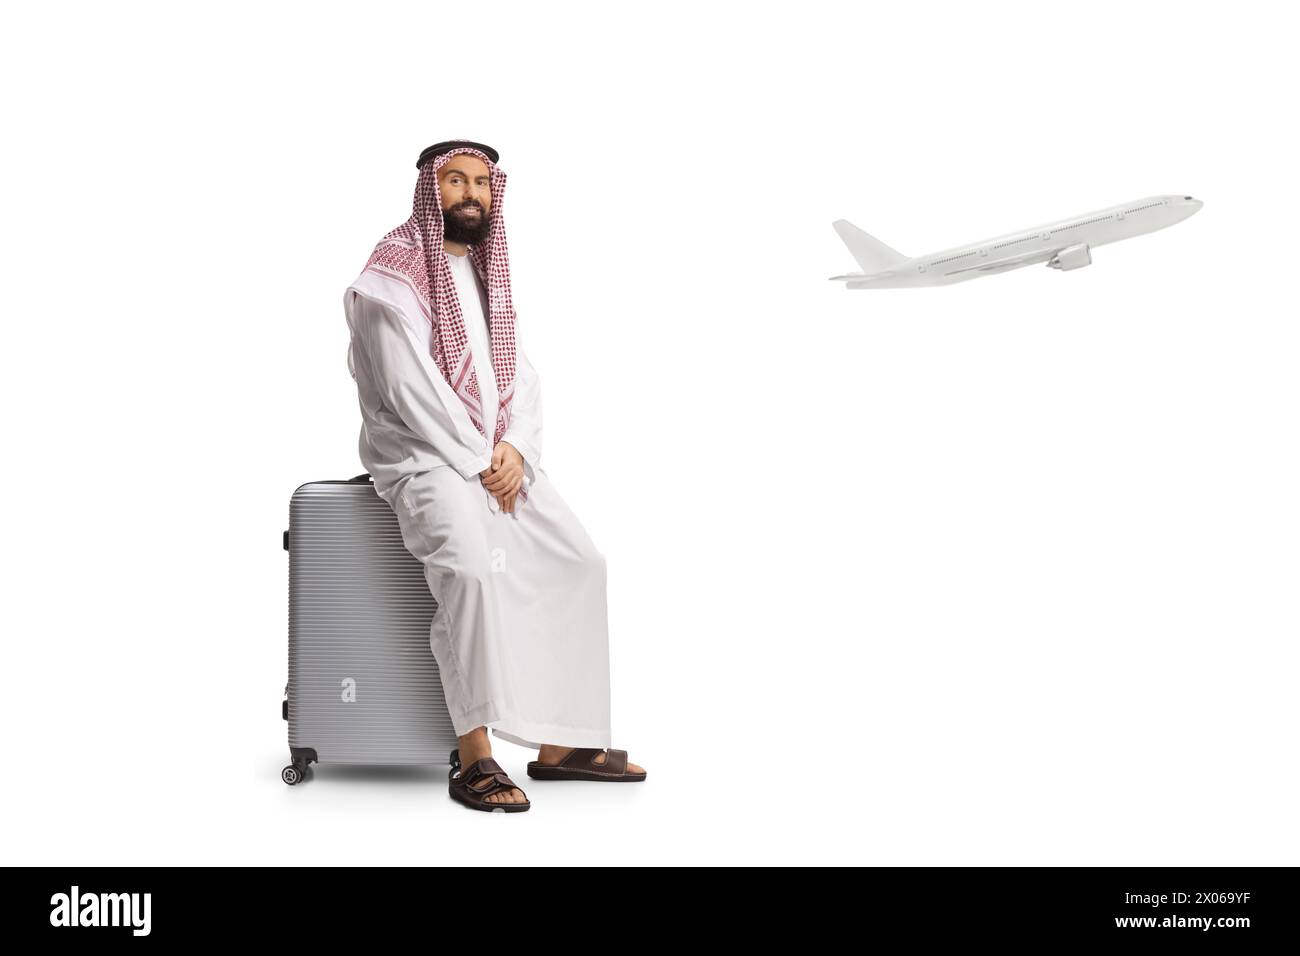 Homme arabe saoudien assis sur une valise à l'aéroport et un avion décollant isolé sur fond blanc Banque D'Images